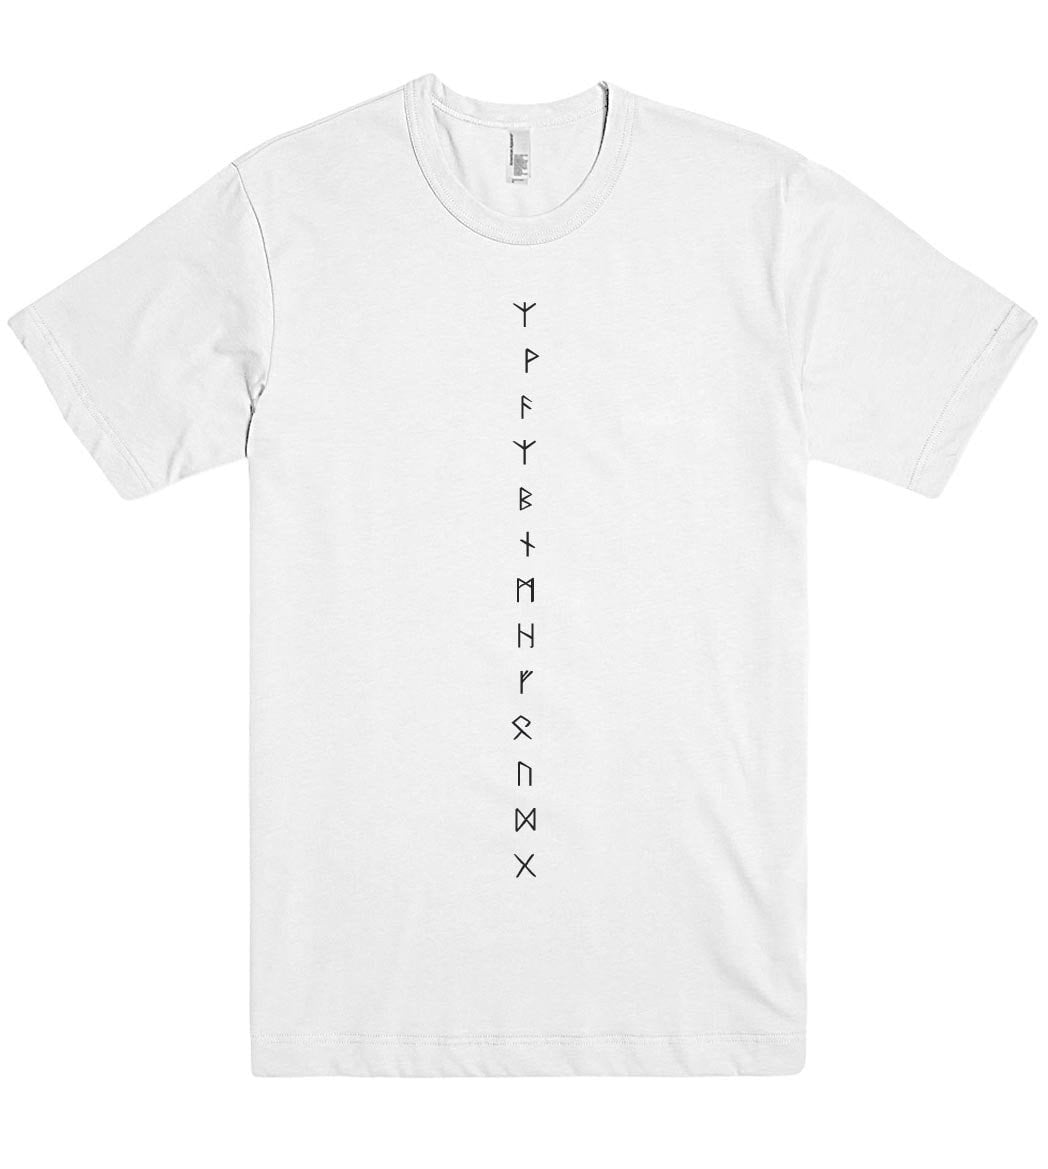 runes t shirt - Shirtoopia